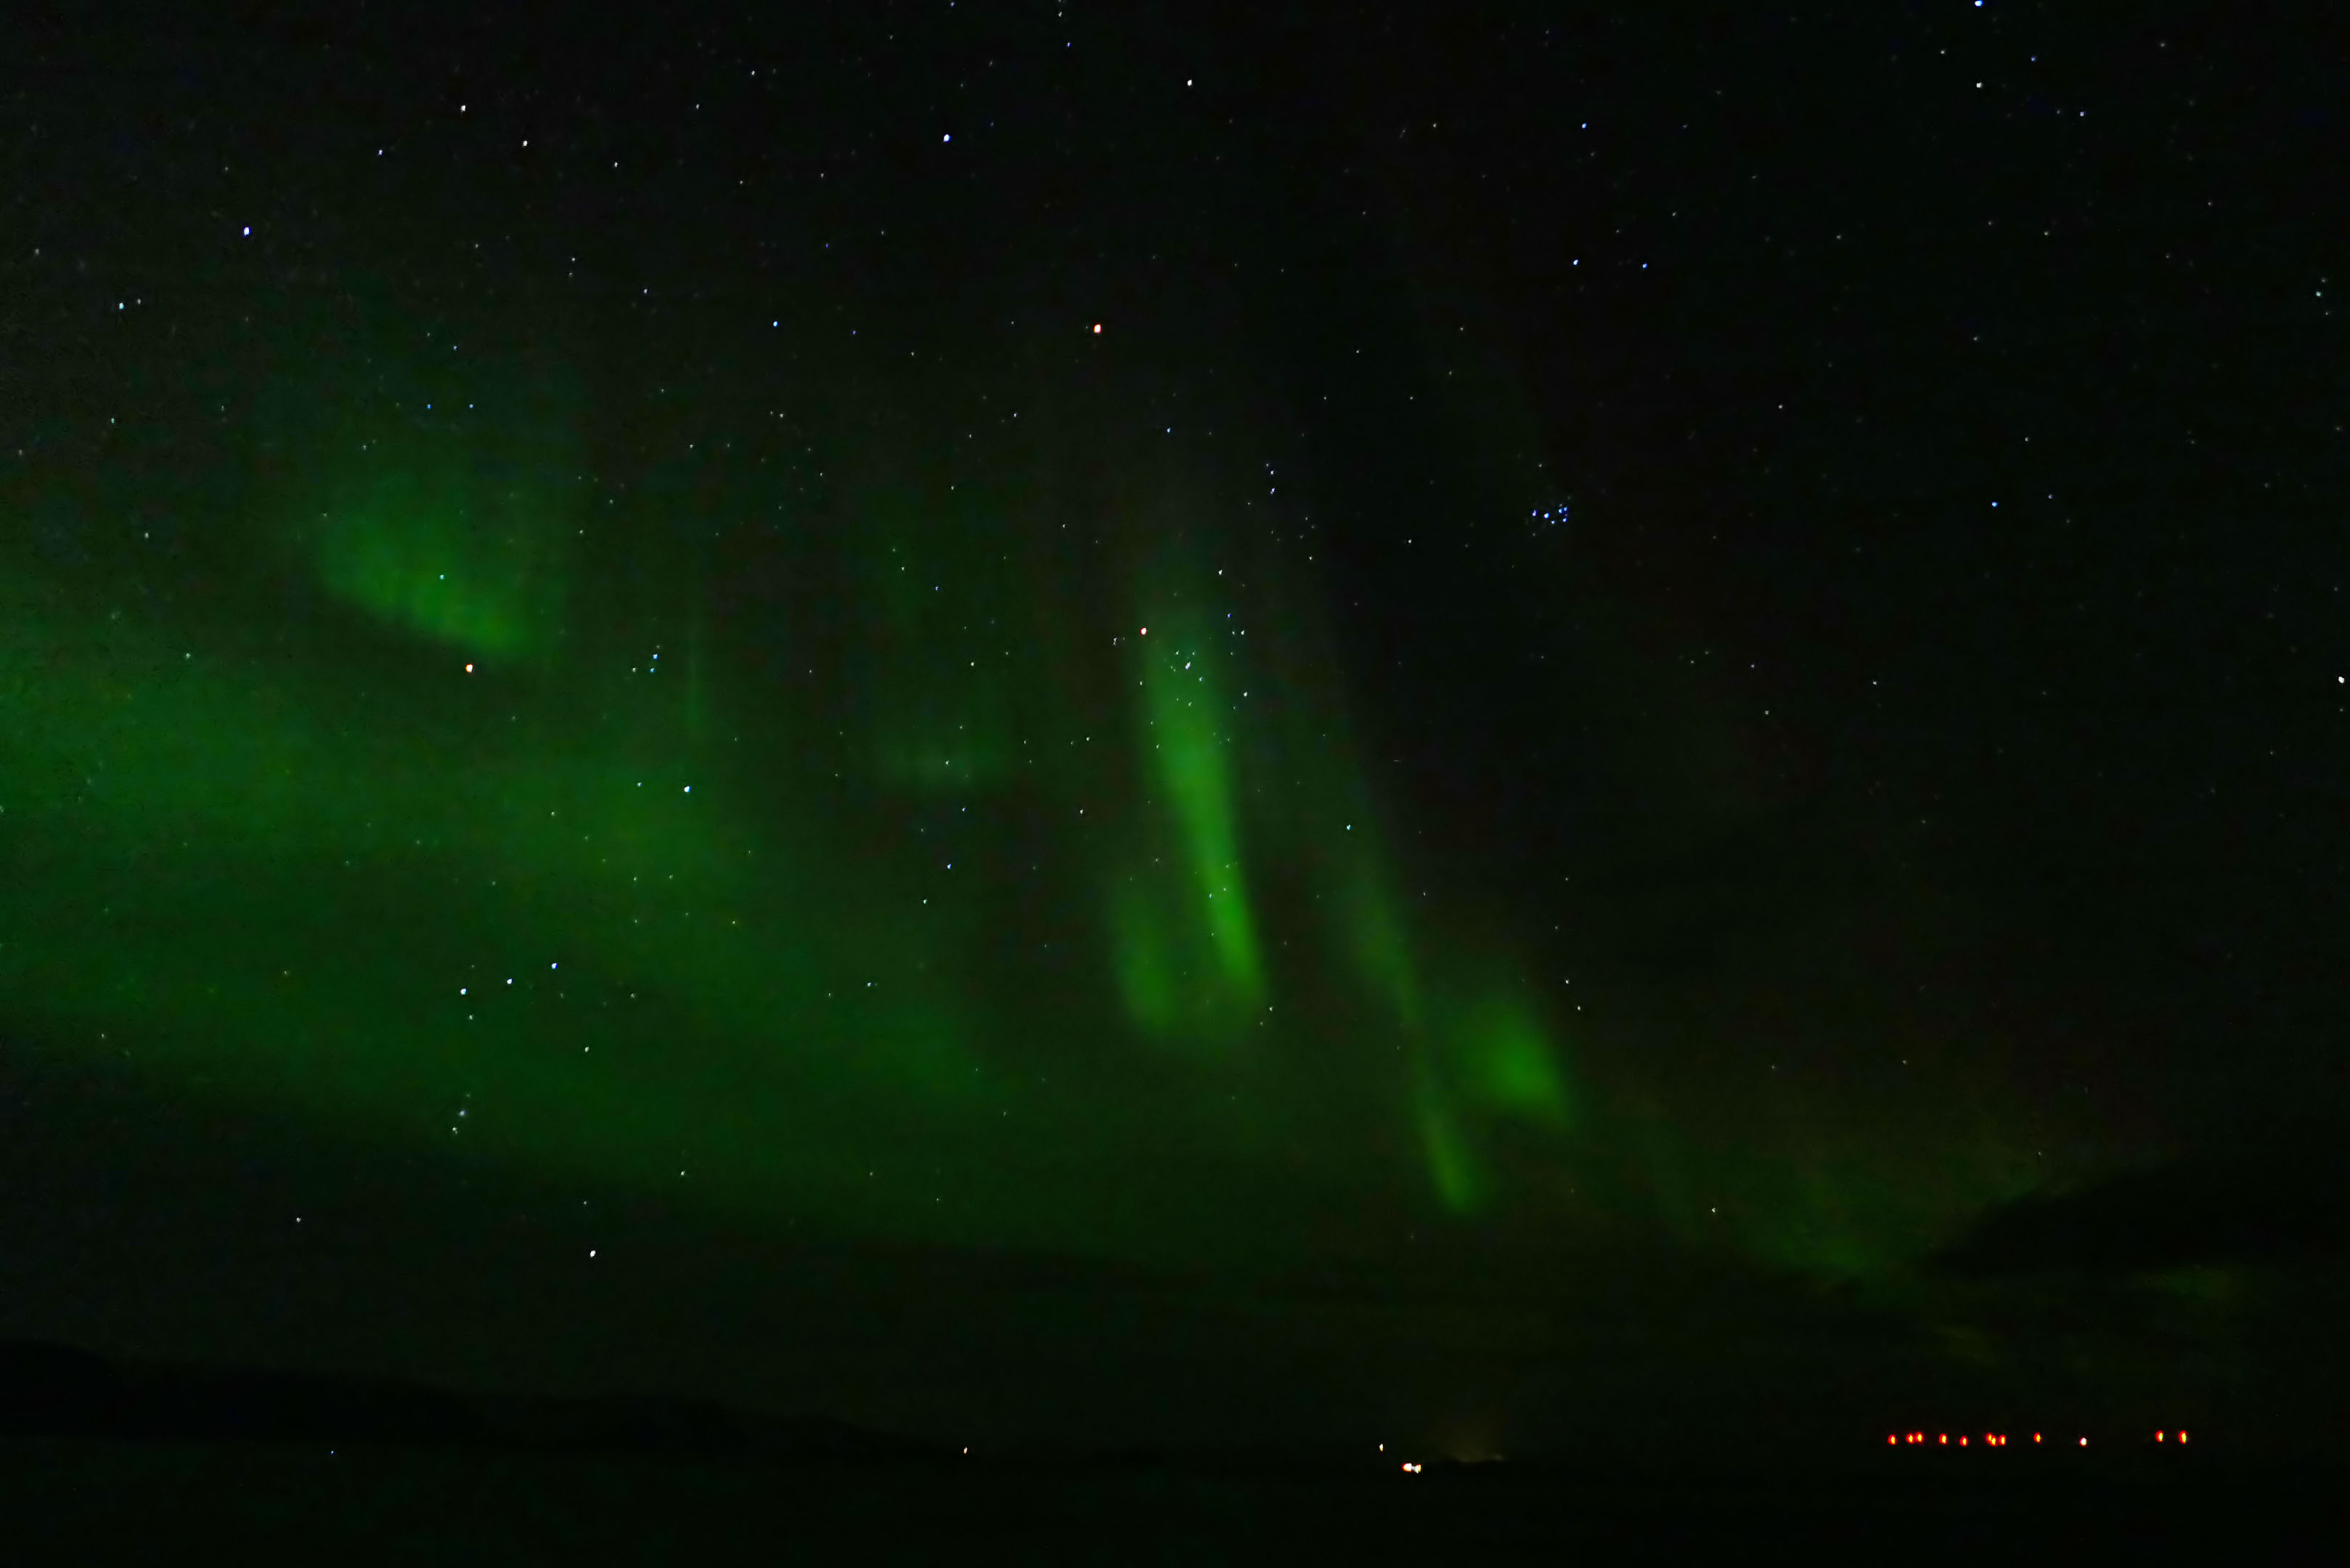 And aurora borealis too...